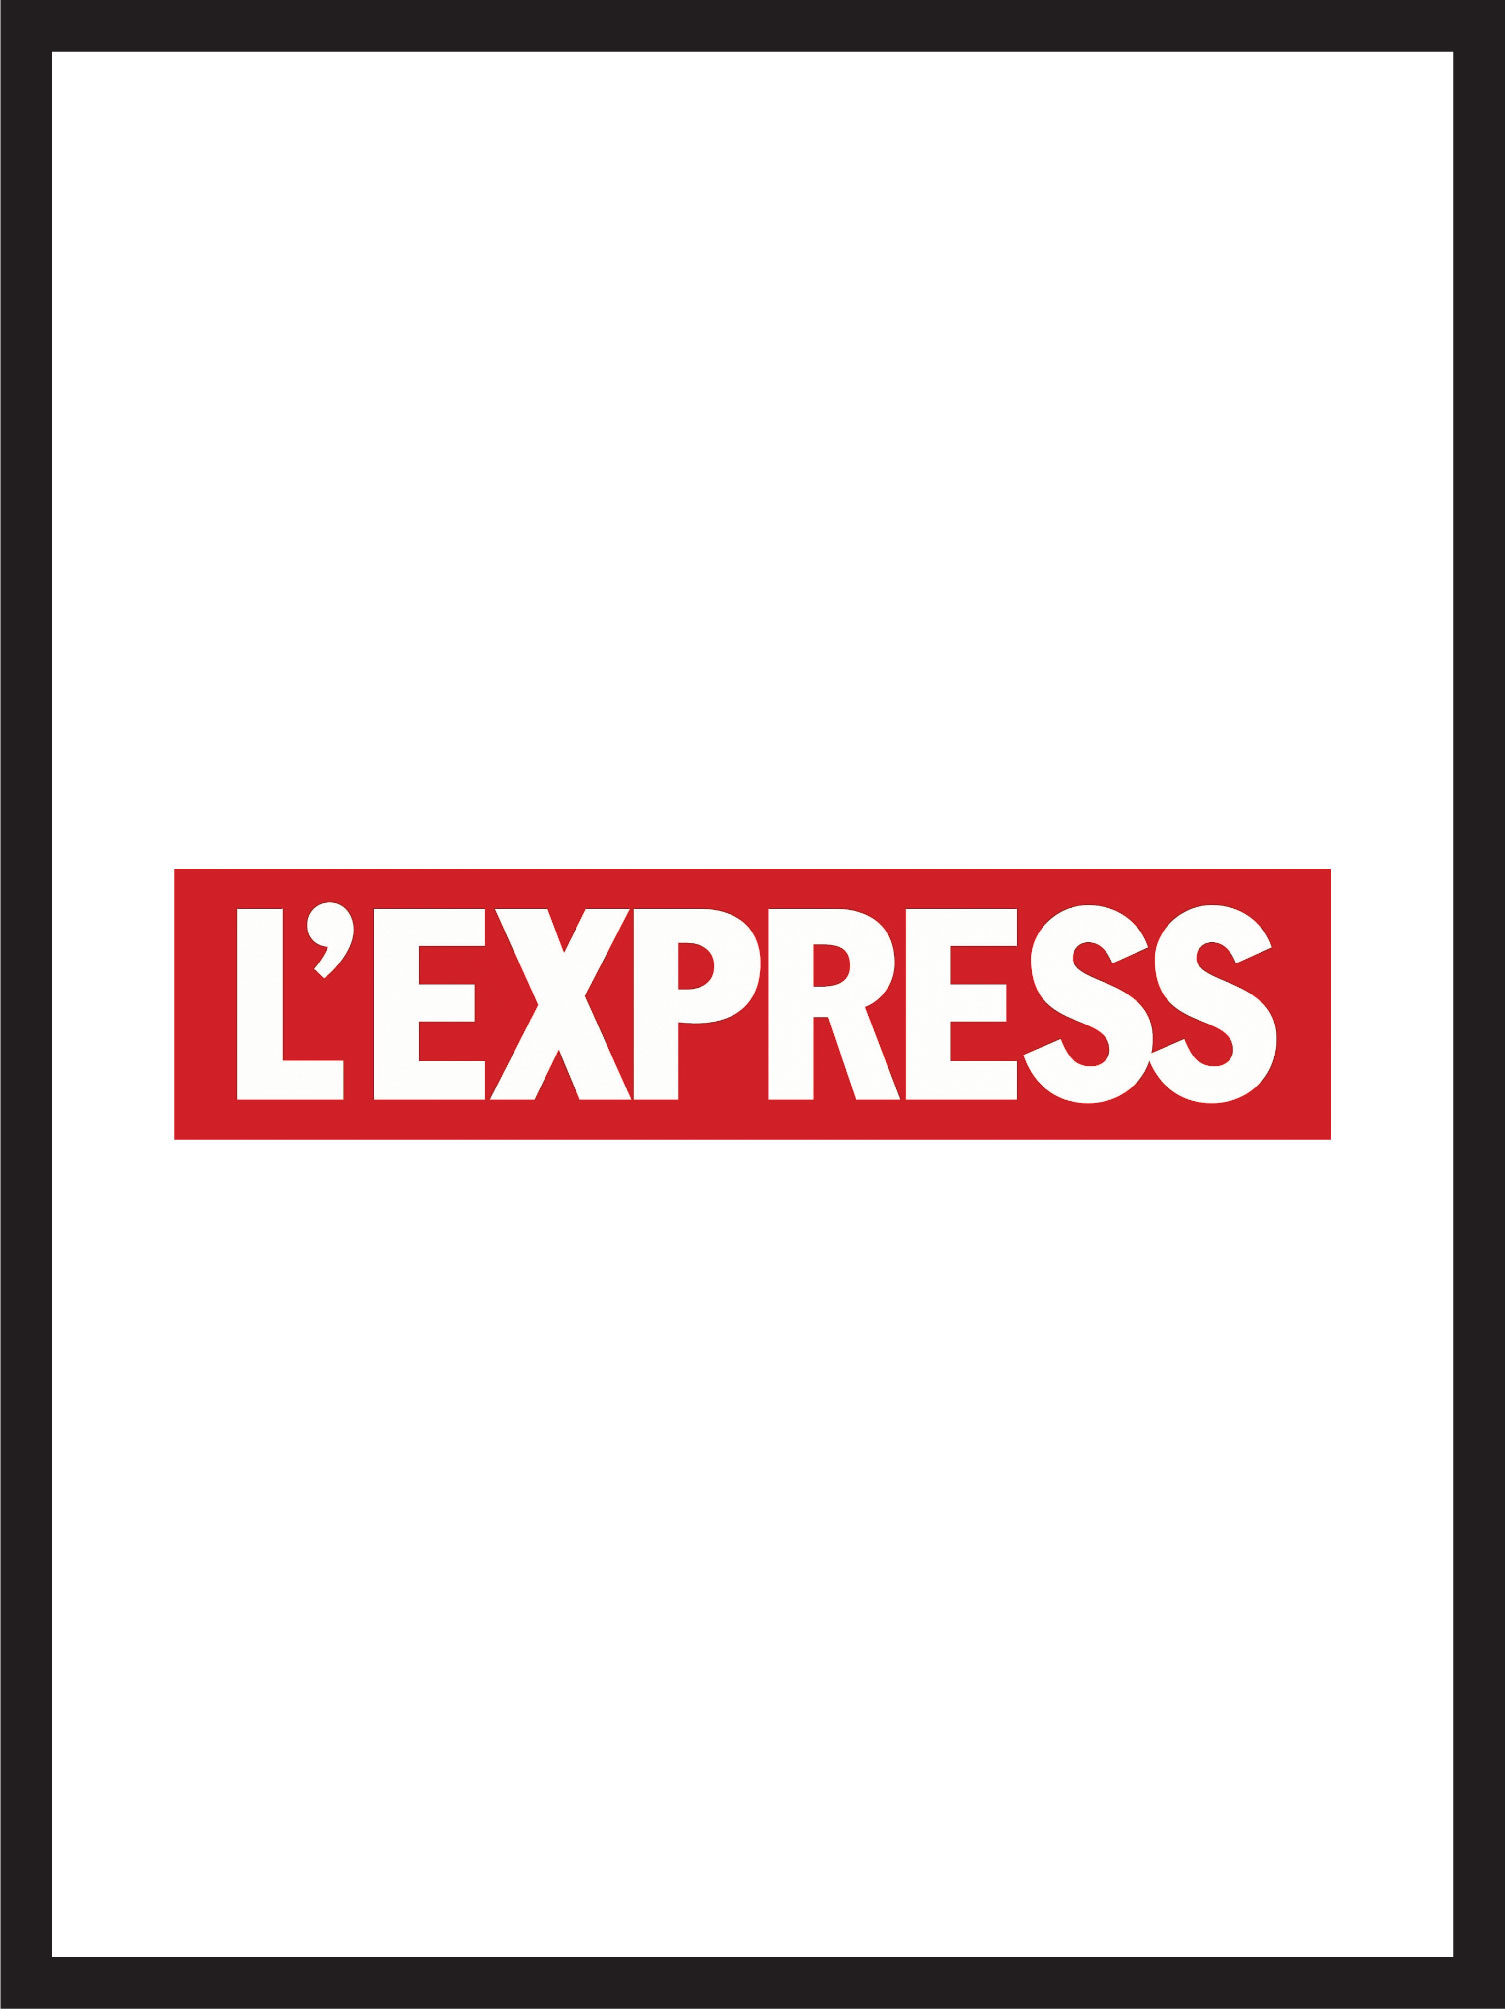 couverture et logo du magazine l'express